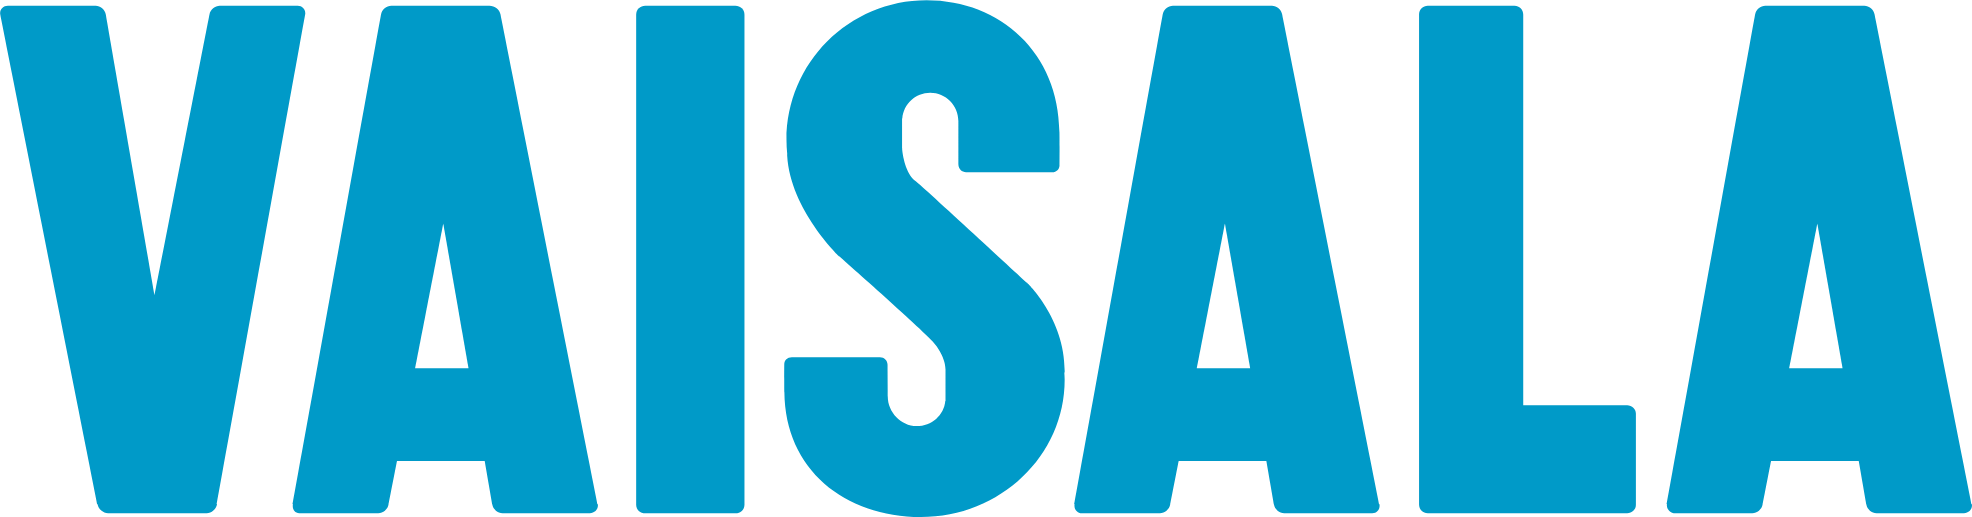 Vaisala
 logo large (transparent PNG)